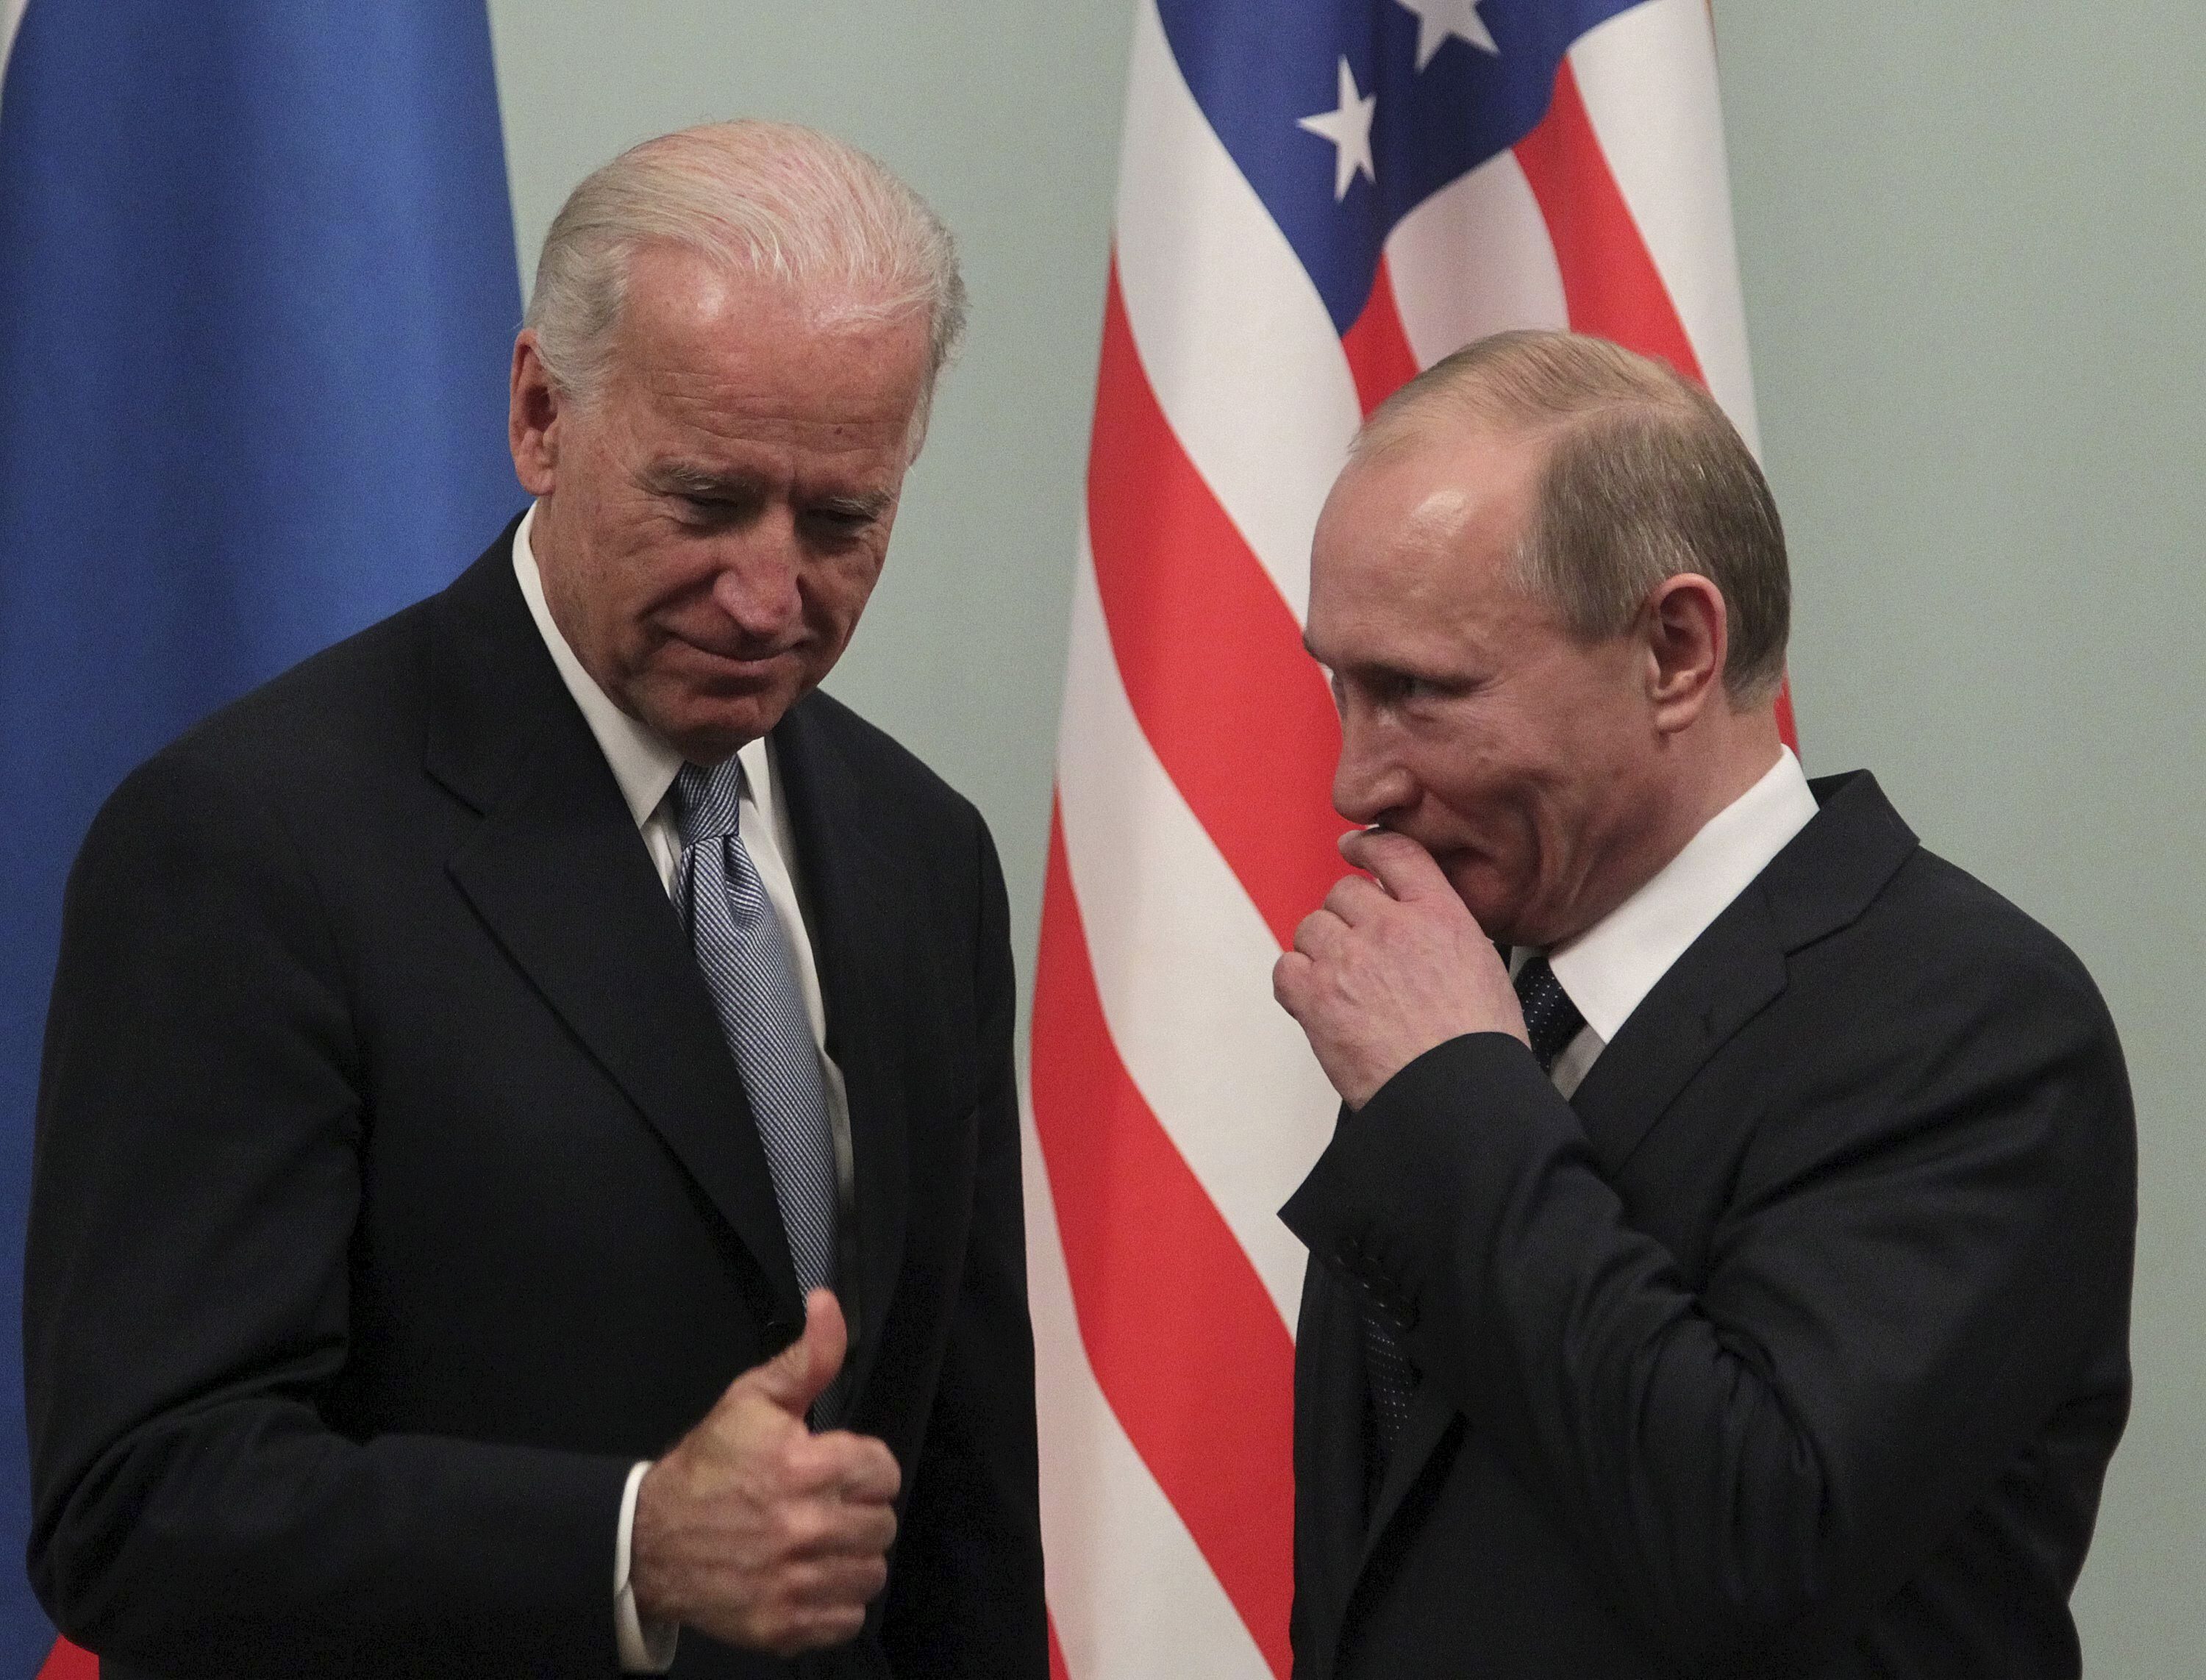 El presidente Biden promete presionar a Rusia y contrarestar su alianza con China e Irán.EFE/MAXIM SHIPENKOV
